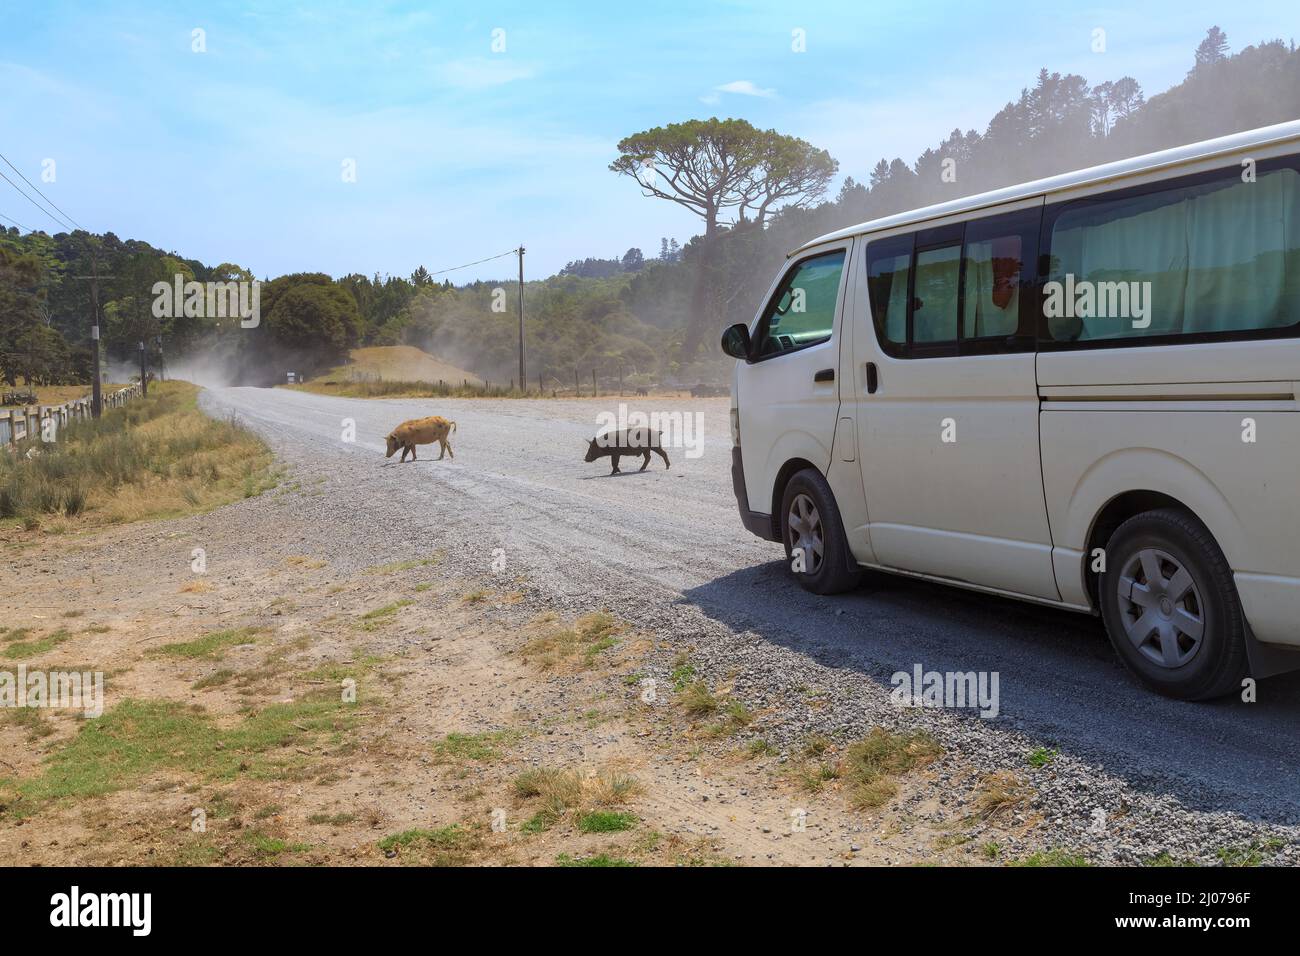 Ein Van hält an, um Schweine über eine staubige Schotterstraße fahren zu lassen. Fotografiert auf der Coromandel Peninsula, Neuseeland Stockfoto